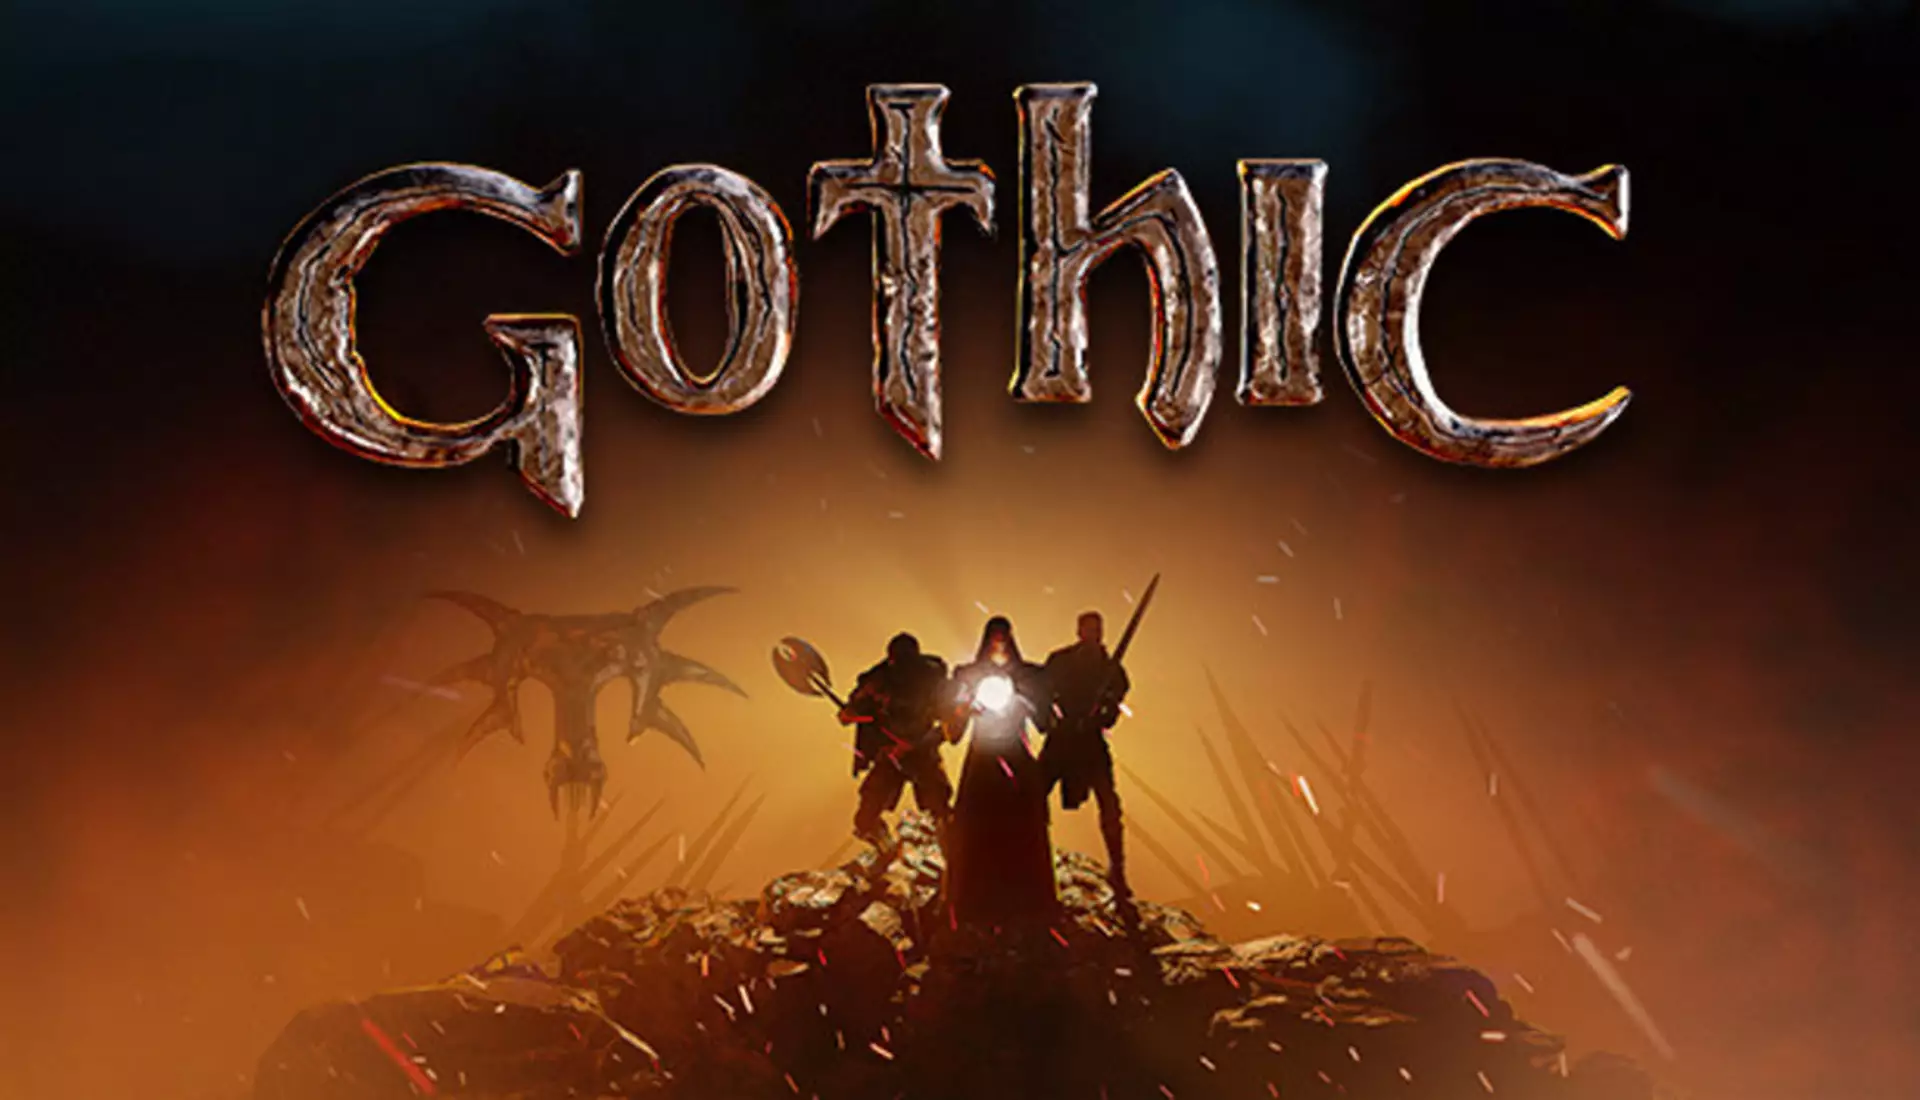 Gothic - za co kochamy tę rozpikselowaną grę? O niezaprzeczalnym klasyku RPG